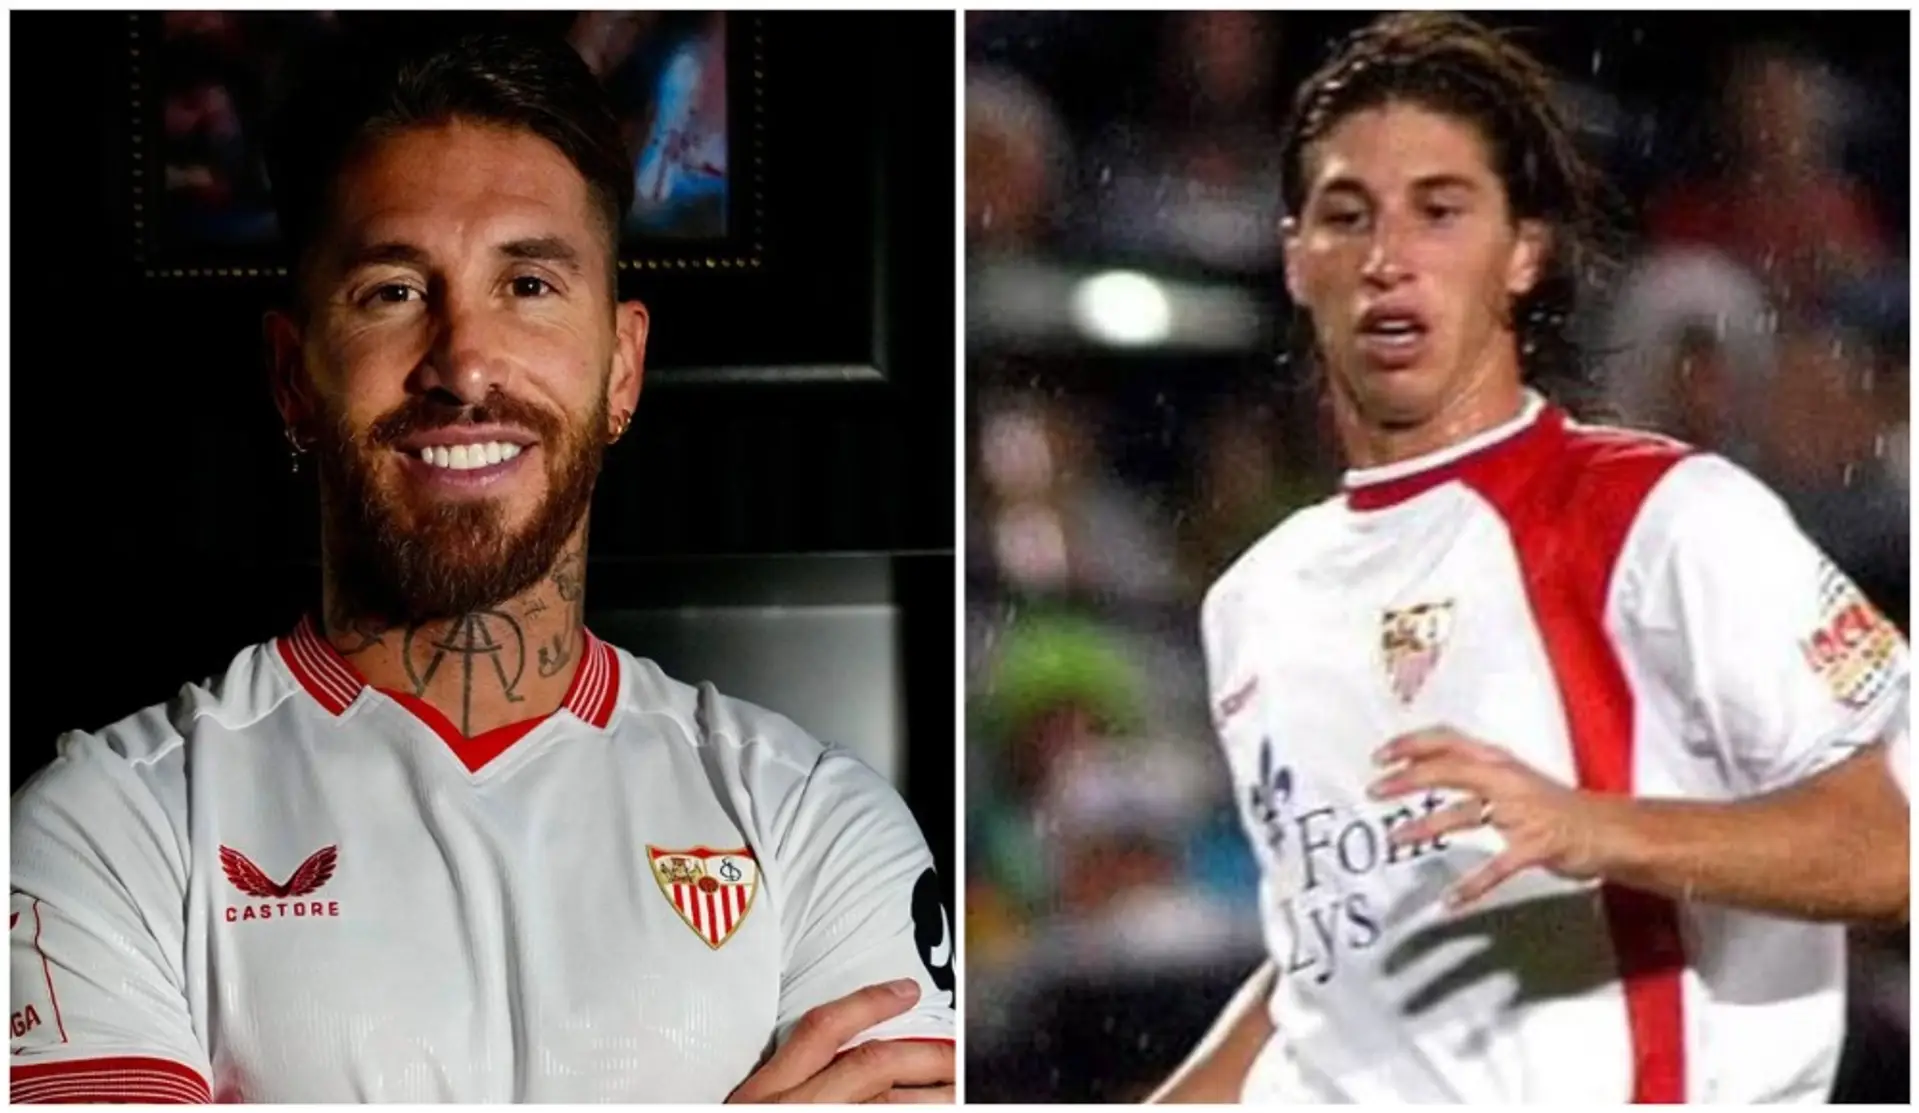 "Ich hatte eine Schuld": Ramos erklärt, warum er beim FC Sevilla und nicht in der MLS oder in Saudi-Arabien gelandet ist